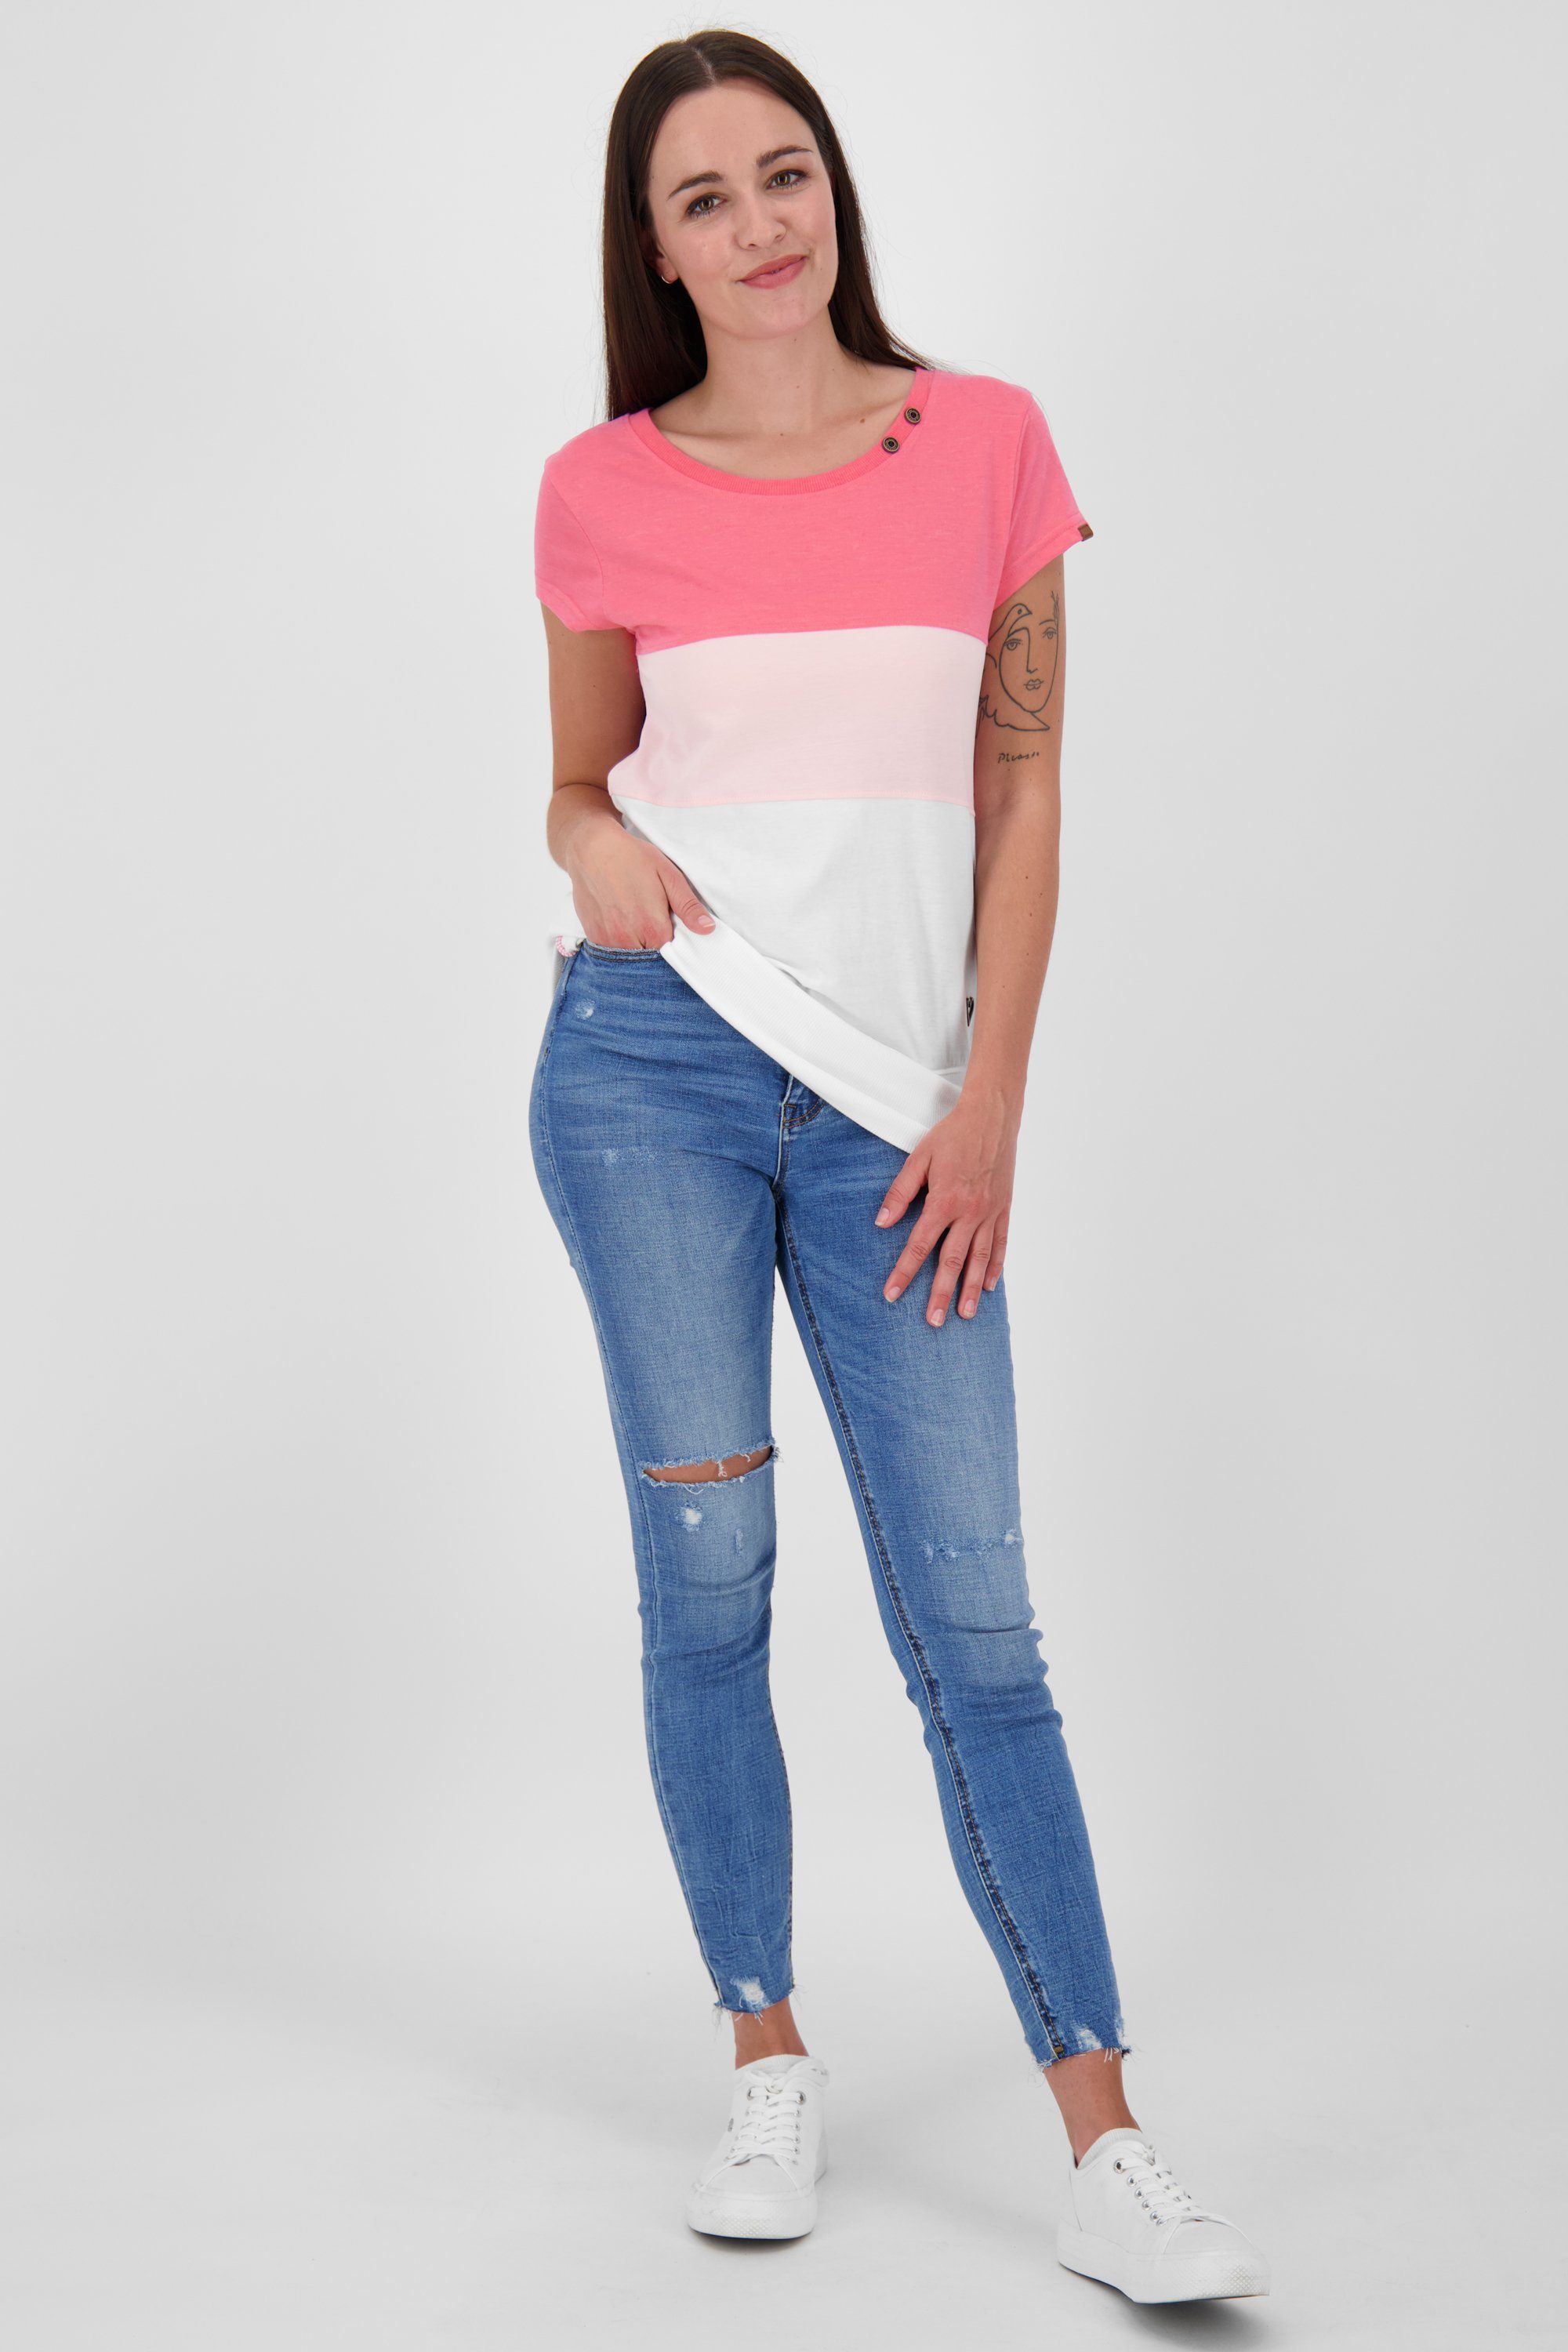 Damen T-Shirt flamingo CoraAK & Kickin Alife Shirt T-Shirt